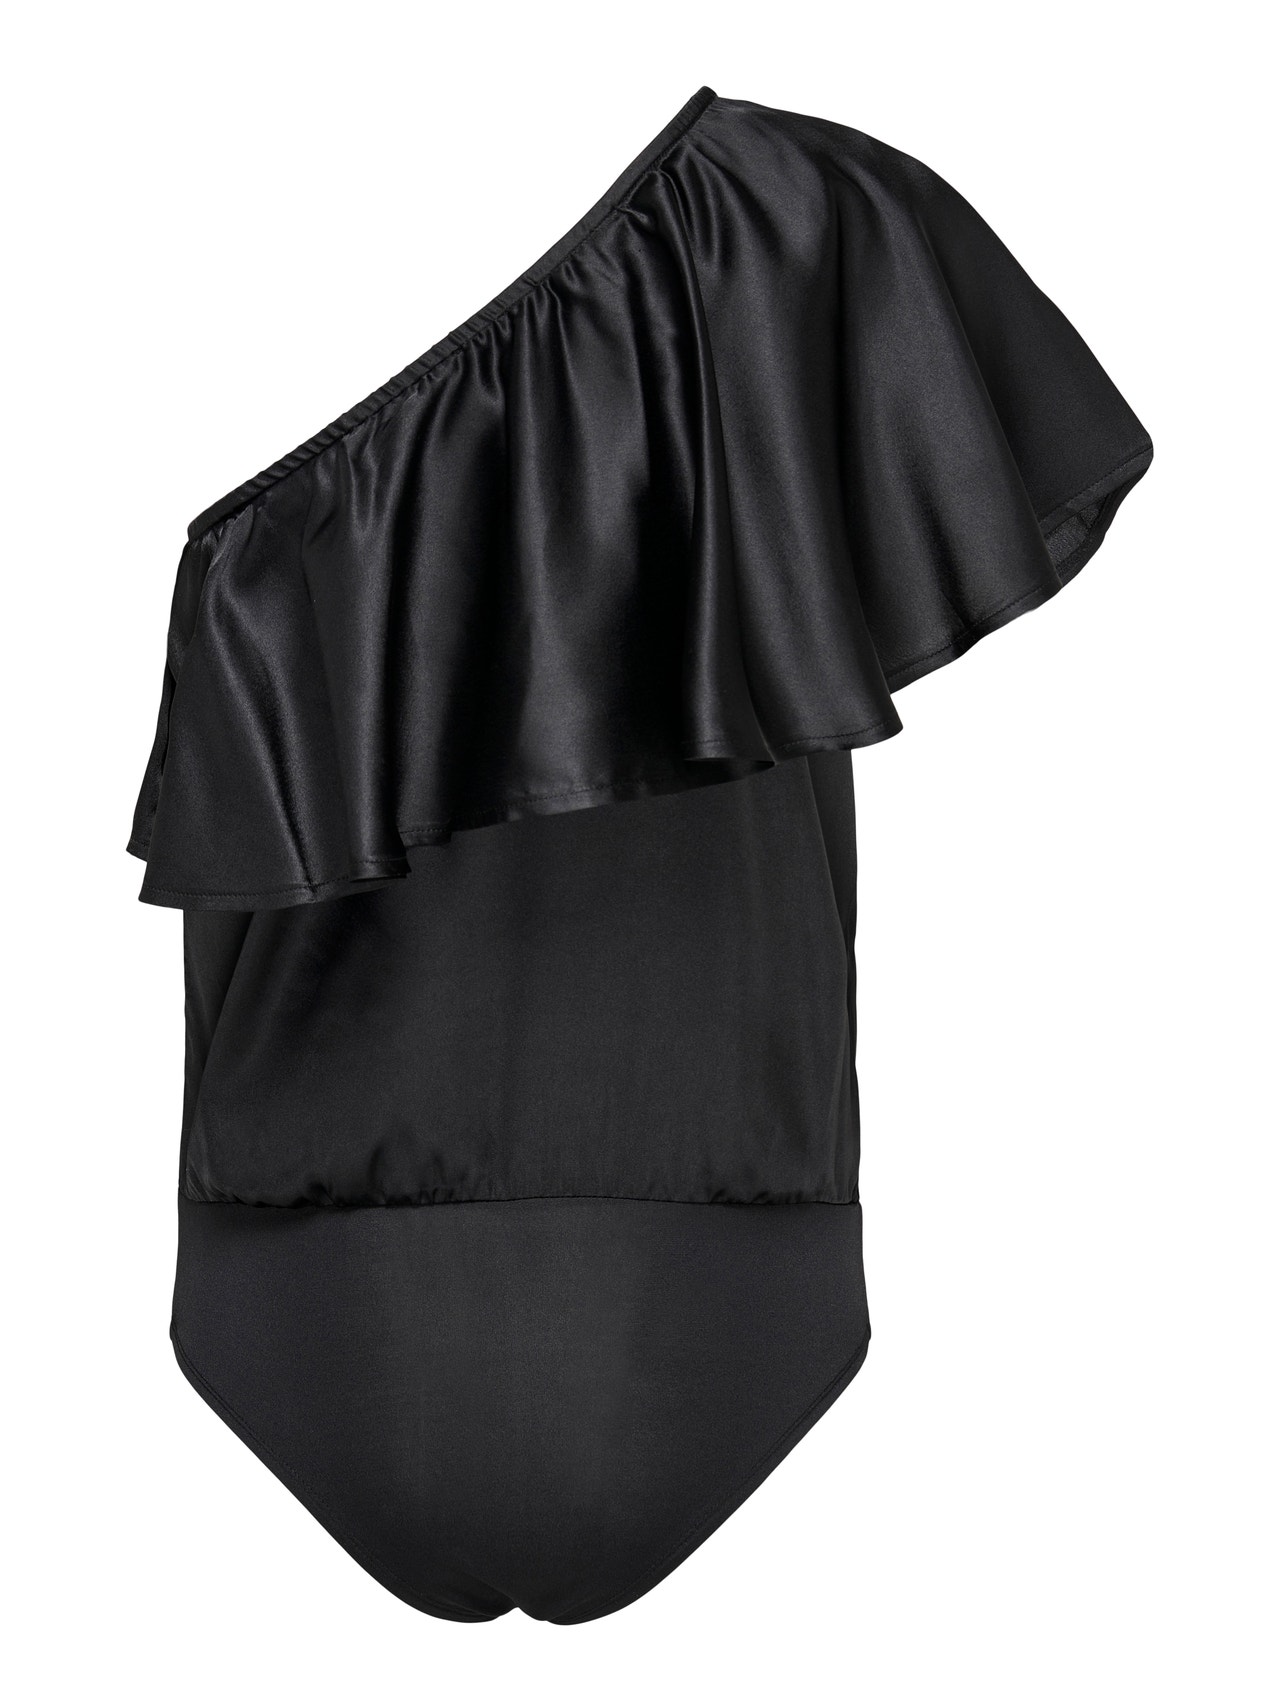 ONLY One shoulder frill Bodysuit -Black - 15277623